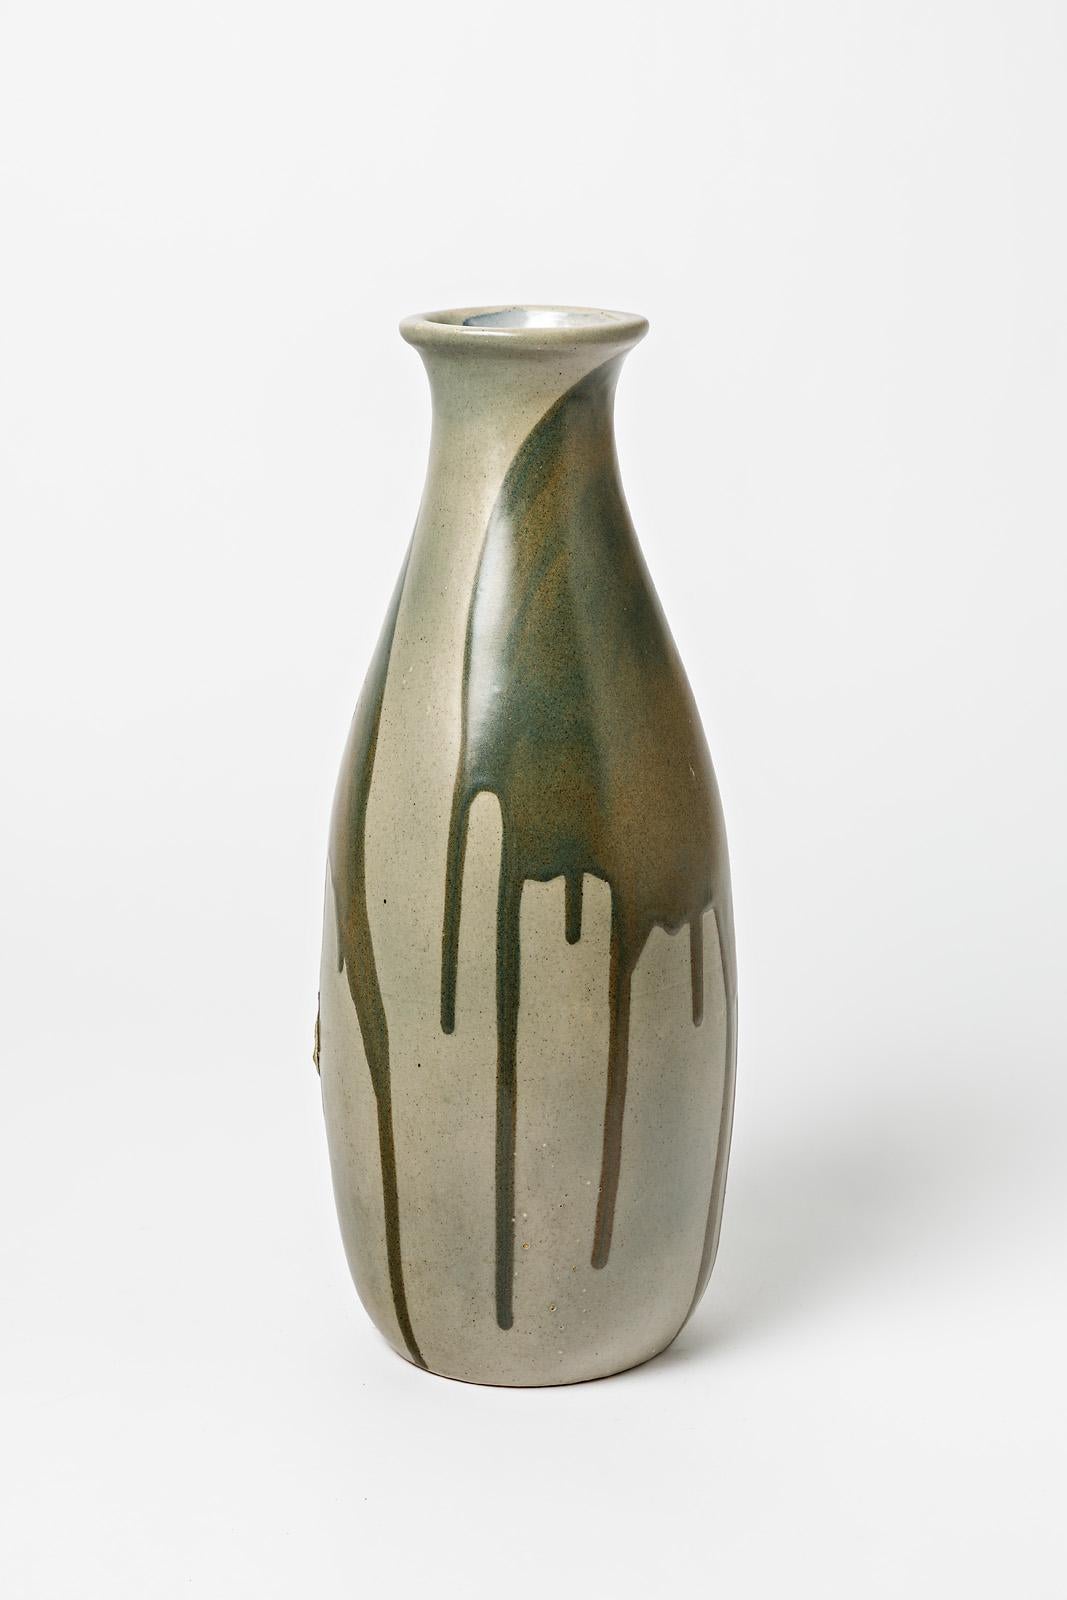 Vase aus glasiertem Steingut mit Tropfendekor von Jean Pointu.
Künstlersignatur unter dem Sockel 